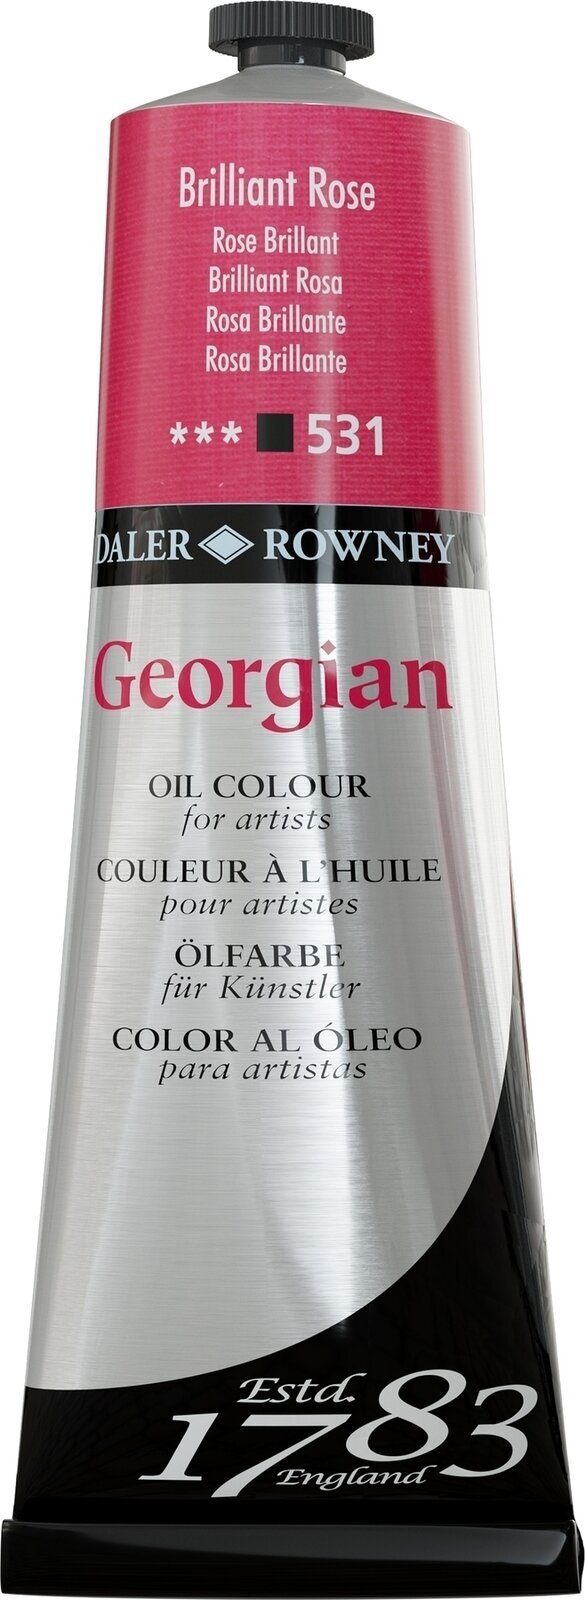 Tempera ad olio Daler Rowney Georgian Pittura a olio Brilliant Rose 225 ml 1 pz